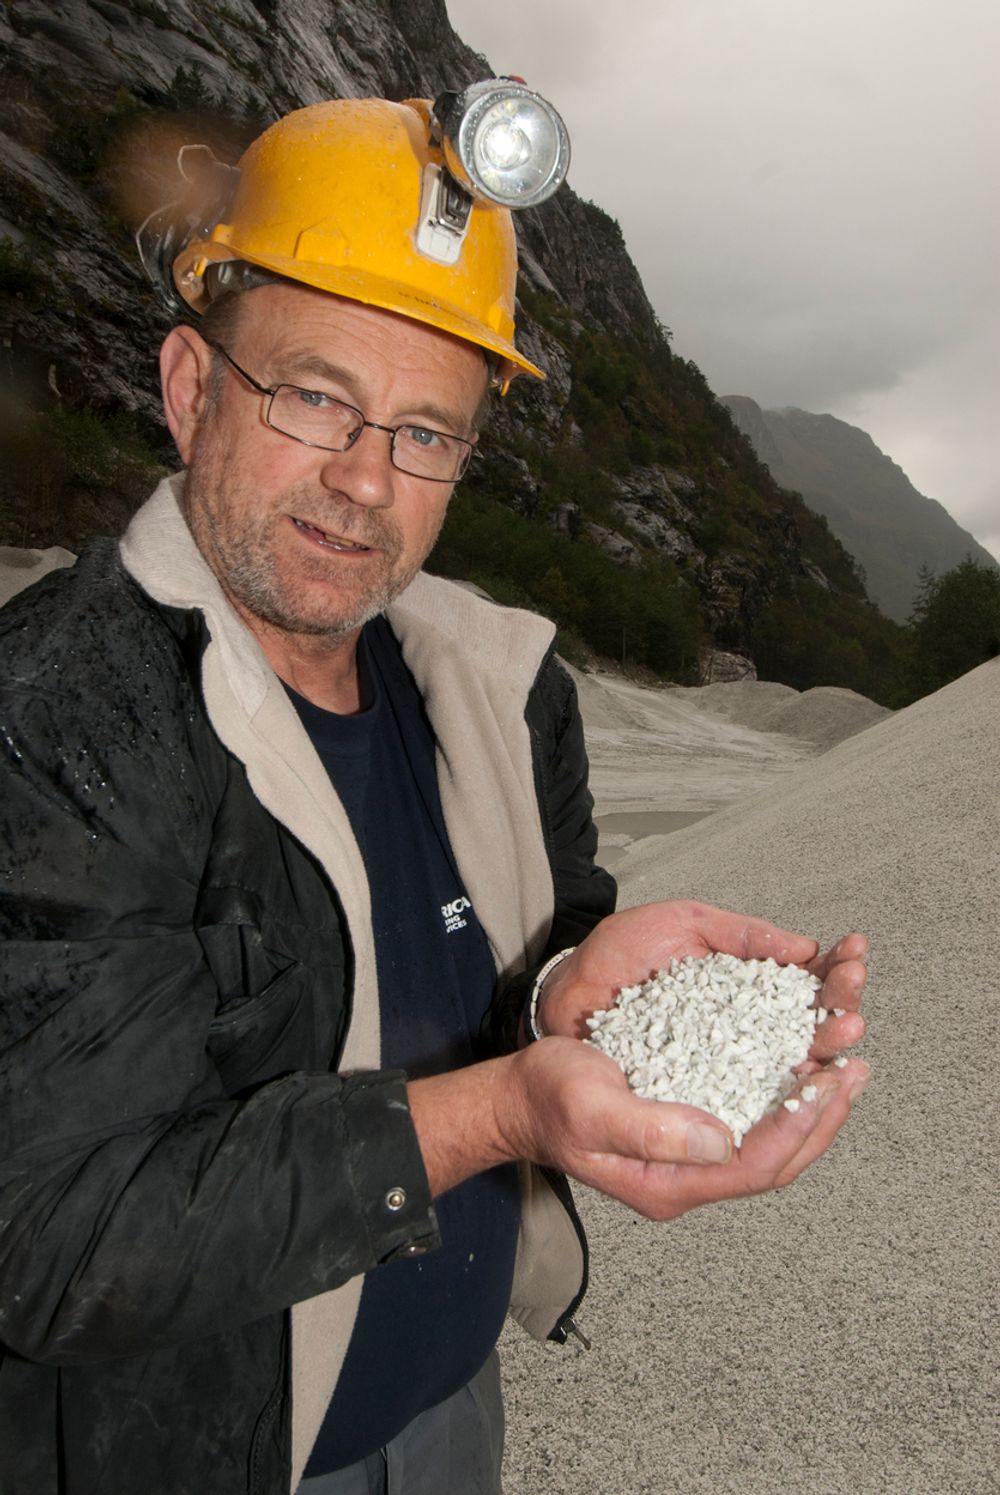 KAN ØKE: I dag utvinnes rundt 220 000 tonn anortositt av Gudvangen Stein. ¿ Hvis anortositt kan brukes til aluminiumproduksjon, går det fint å øke produksjonen til ca. åtte millioner tonn i året, sier Morten Samskott.